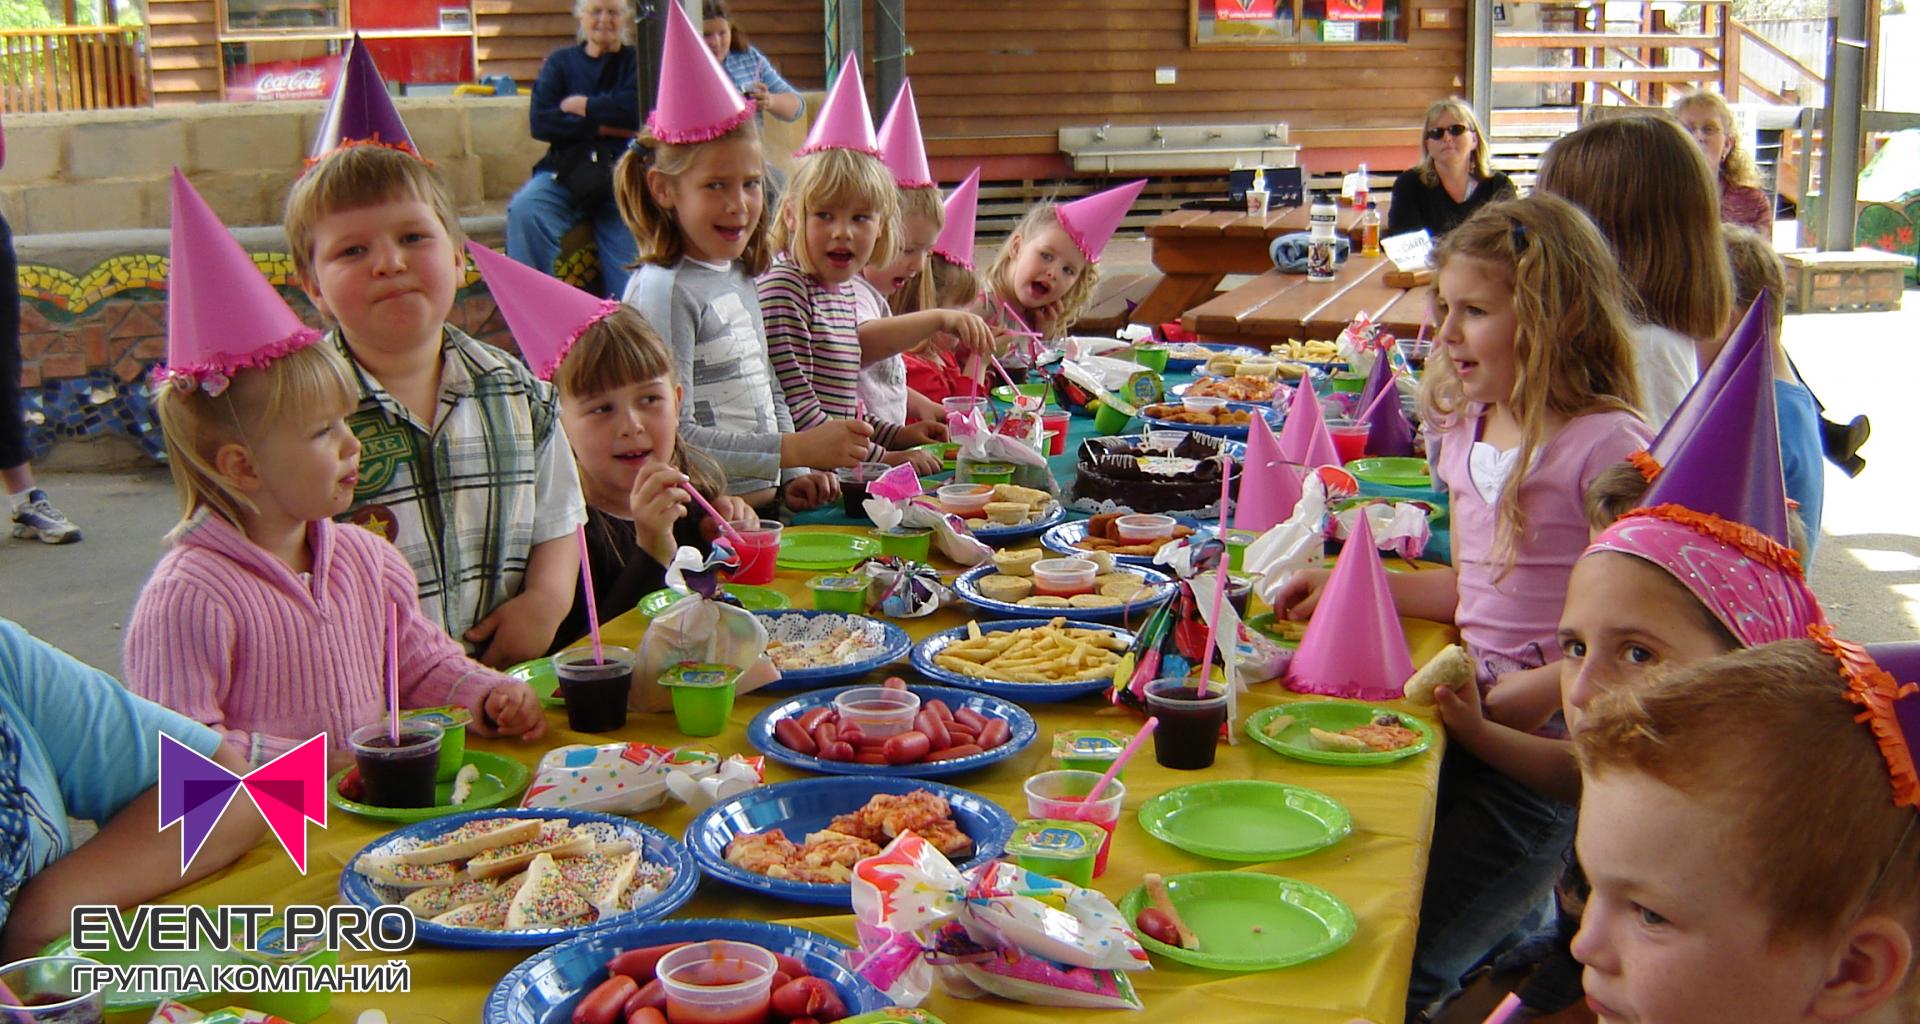 Развлечение за столом на дне рождения. Детский стол на день рождения. Праздничный стол для детей. Детский стол на праздник. Детский праздничный стол на день рождения.